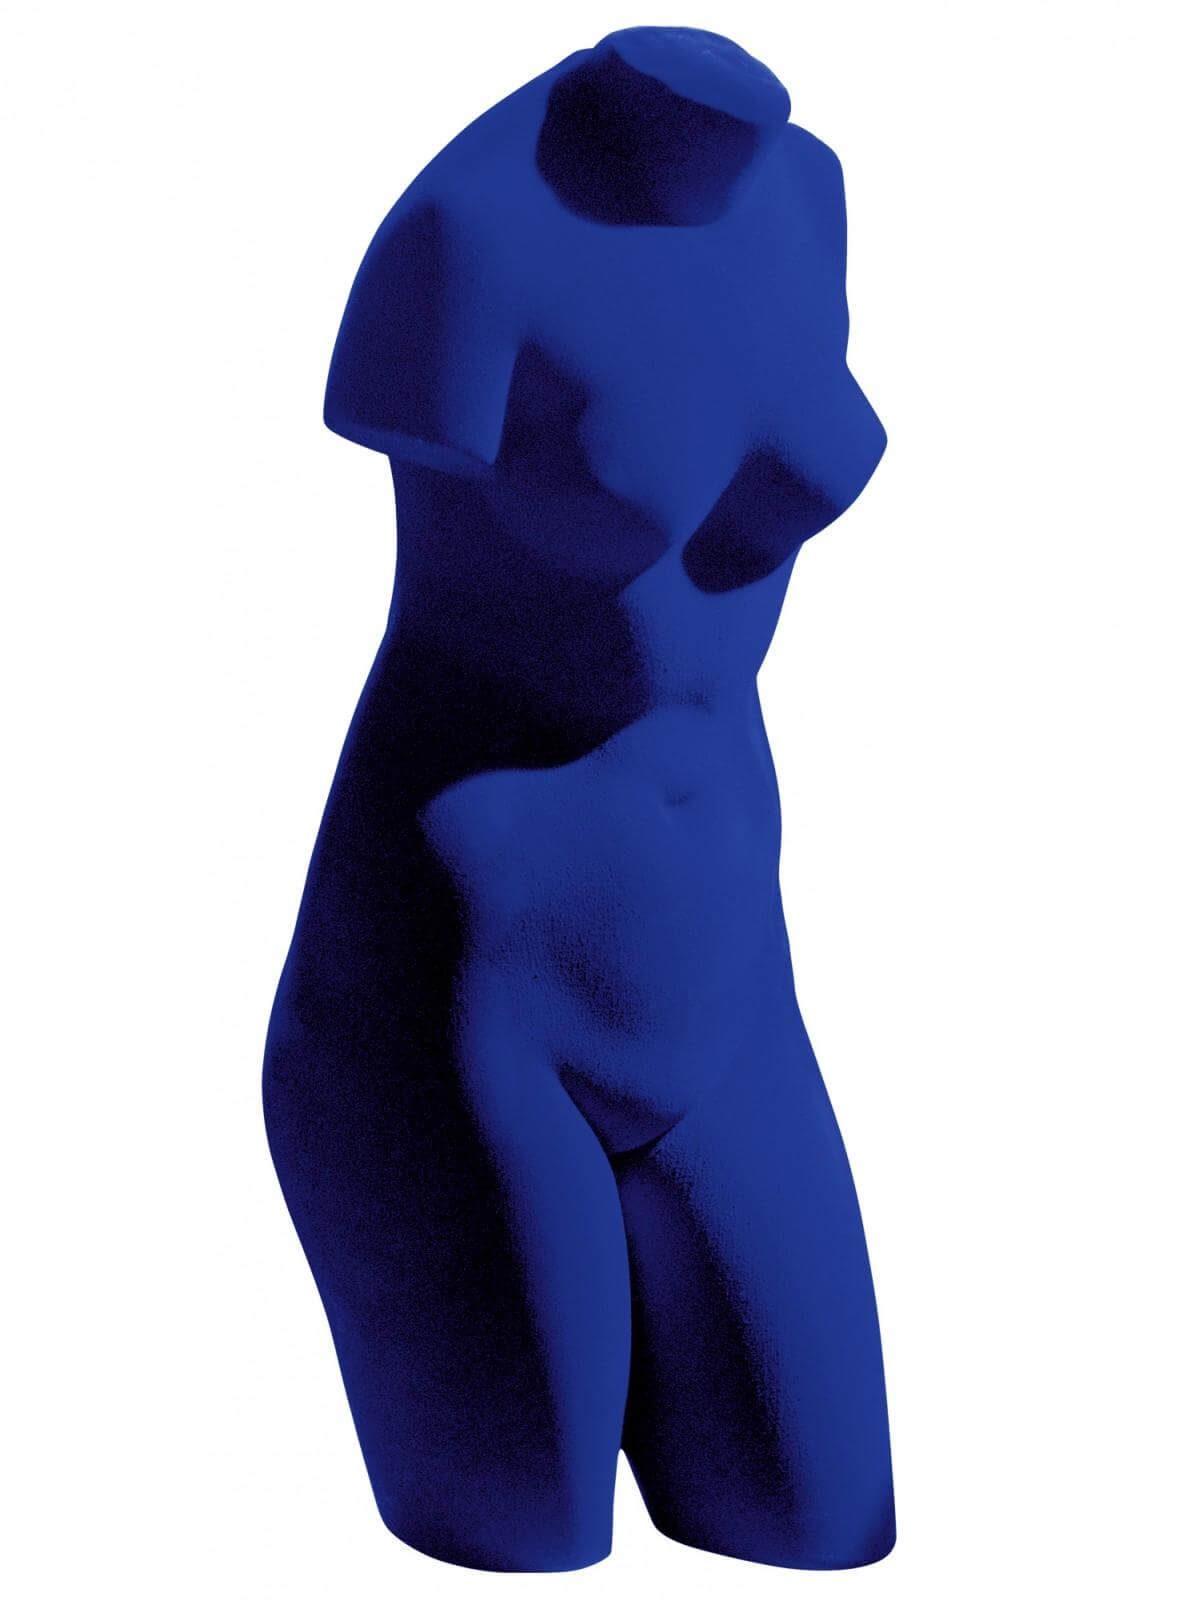 7 Blue Venus (The Venus of Alexandria) (S 41) 1962.jpeg